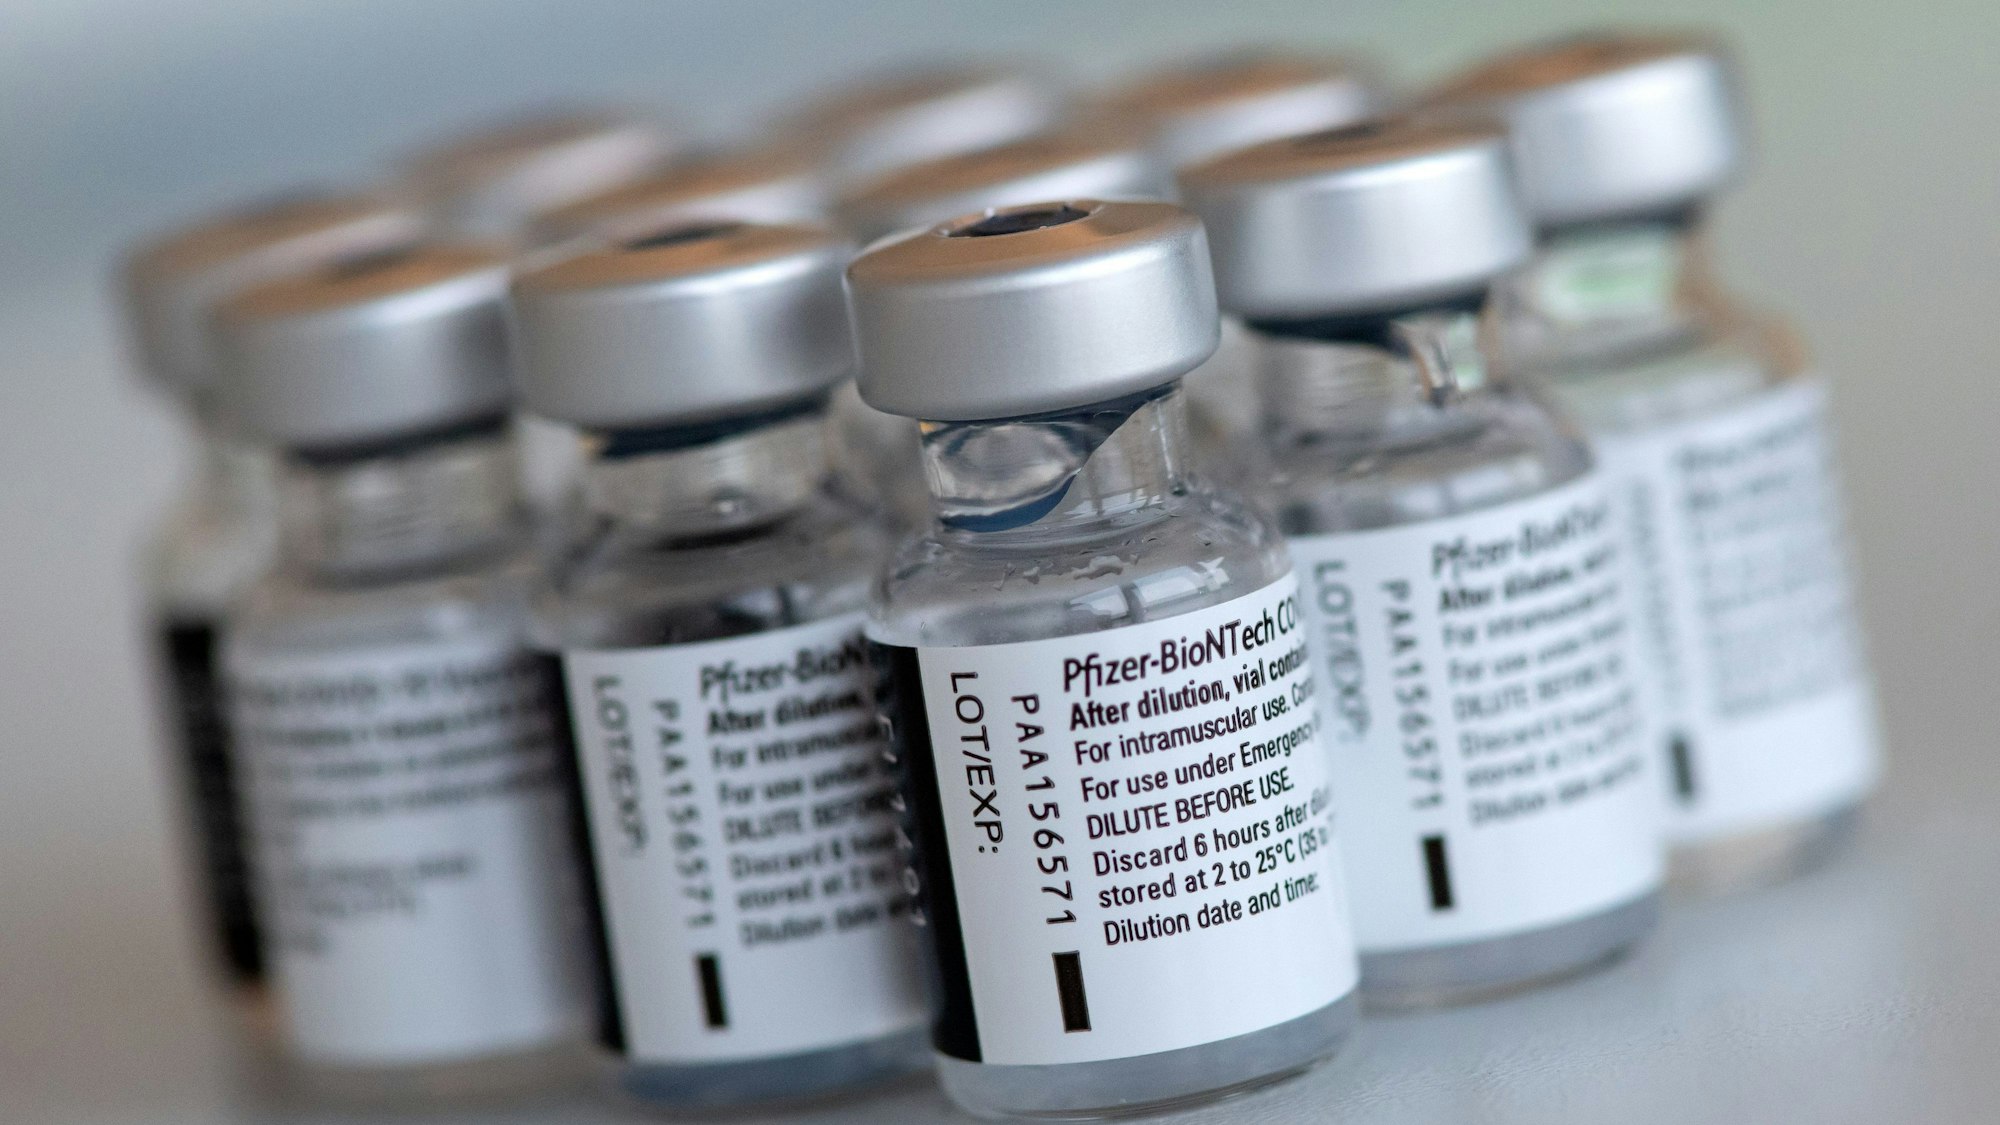 Leere Ampullen des Impfstoffs von Biontech/Pfizer gegen das Corona-Virus SARS-CoV-2 stehen in einem Impfzentrum nach der Vorbereitung der Spritzen auf einem Tisch.